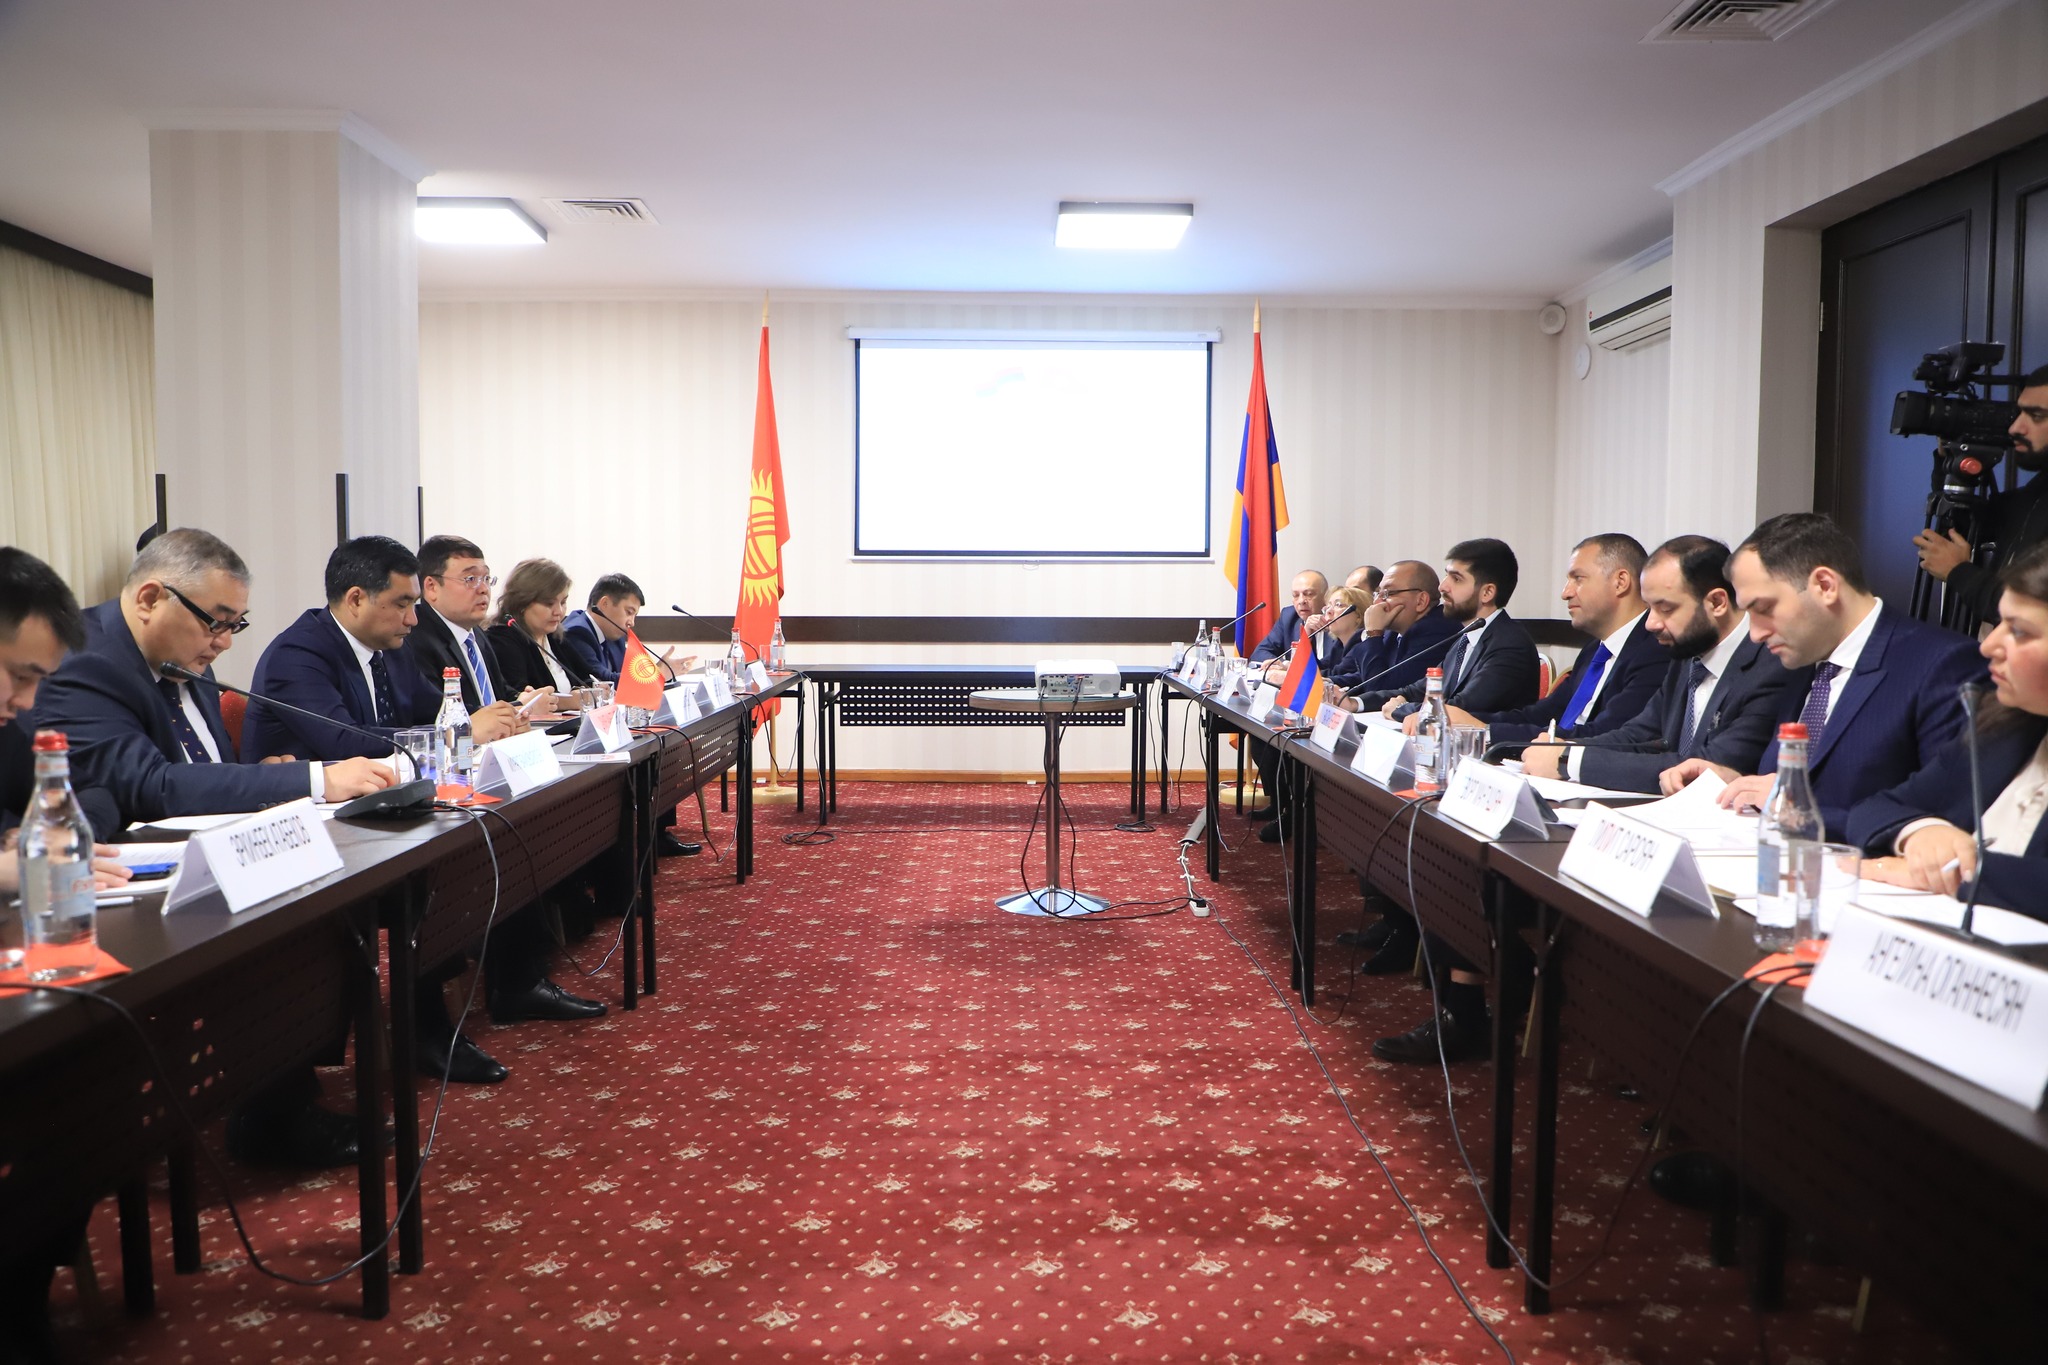 Երևանում կայացել է Տնտեսական համագործակցության հայ-ղրղզական միջկառավարական հանձնաժողովի առաջին նիստը